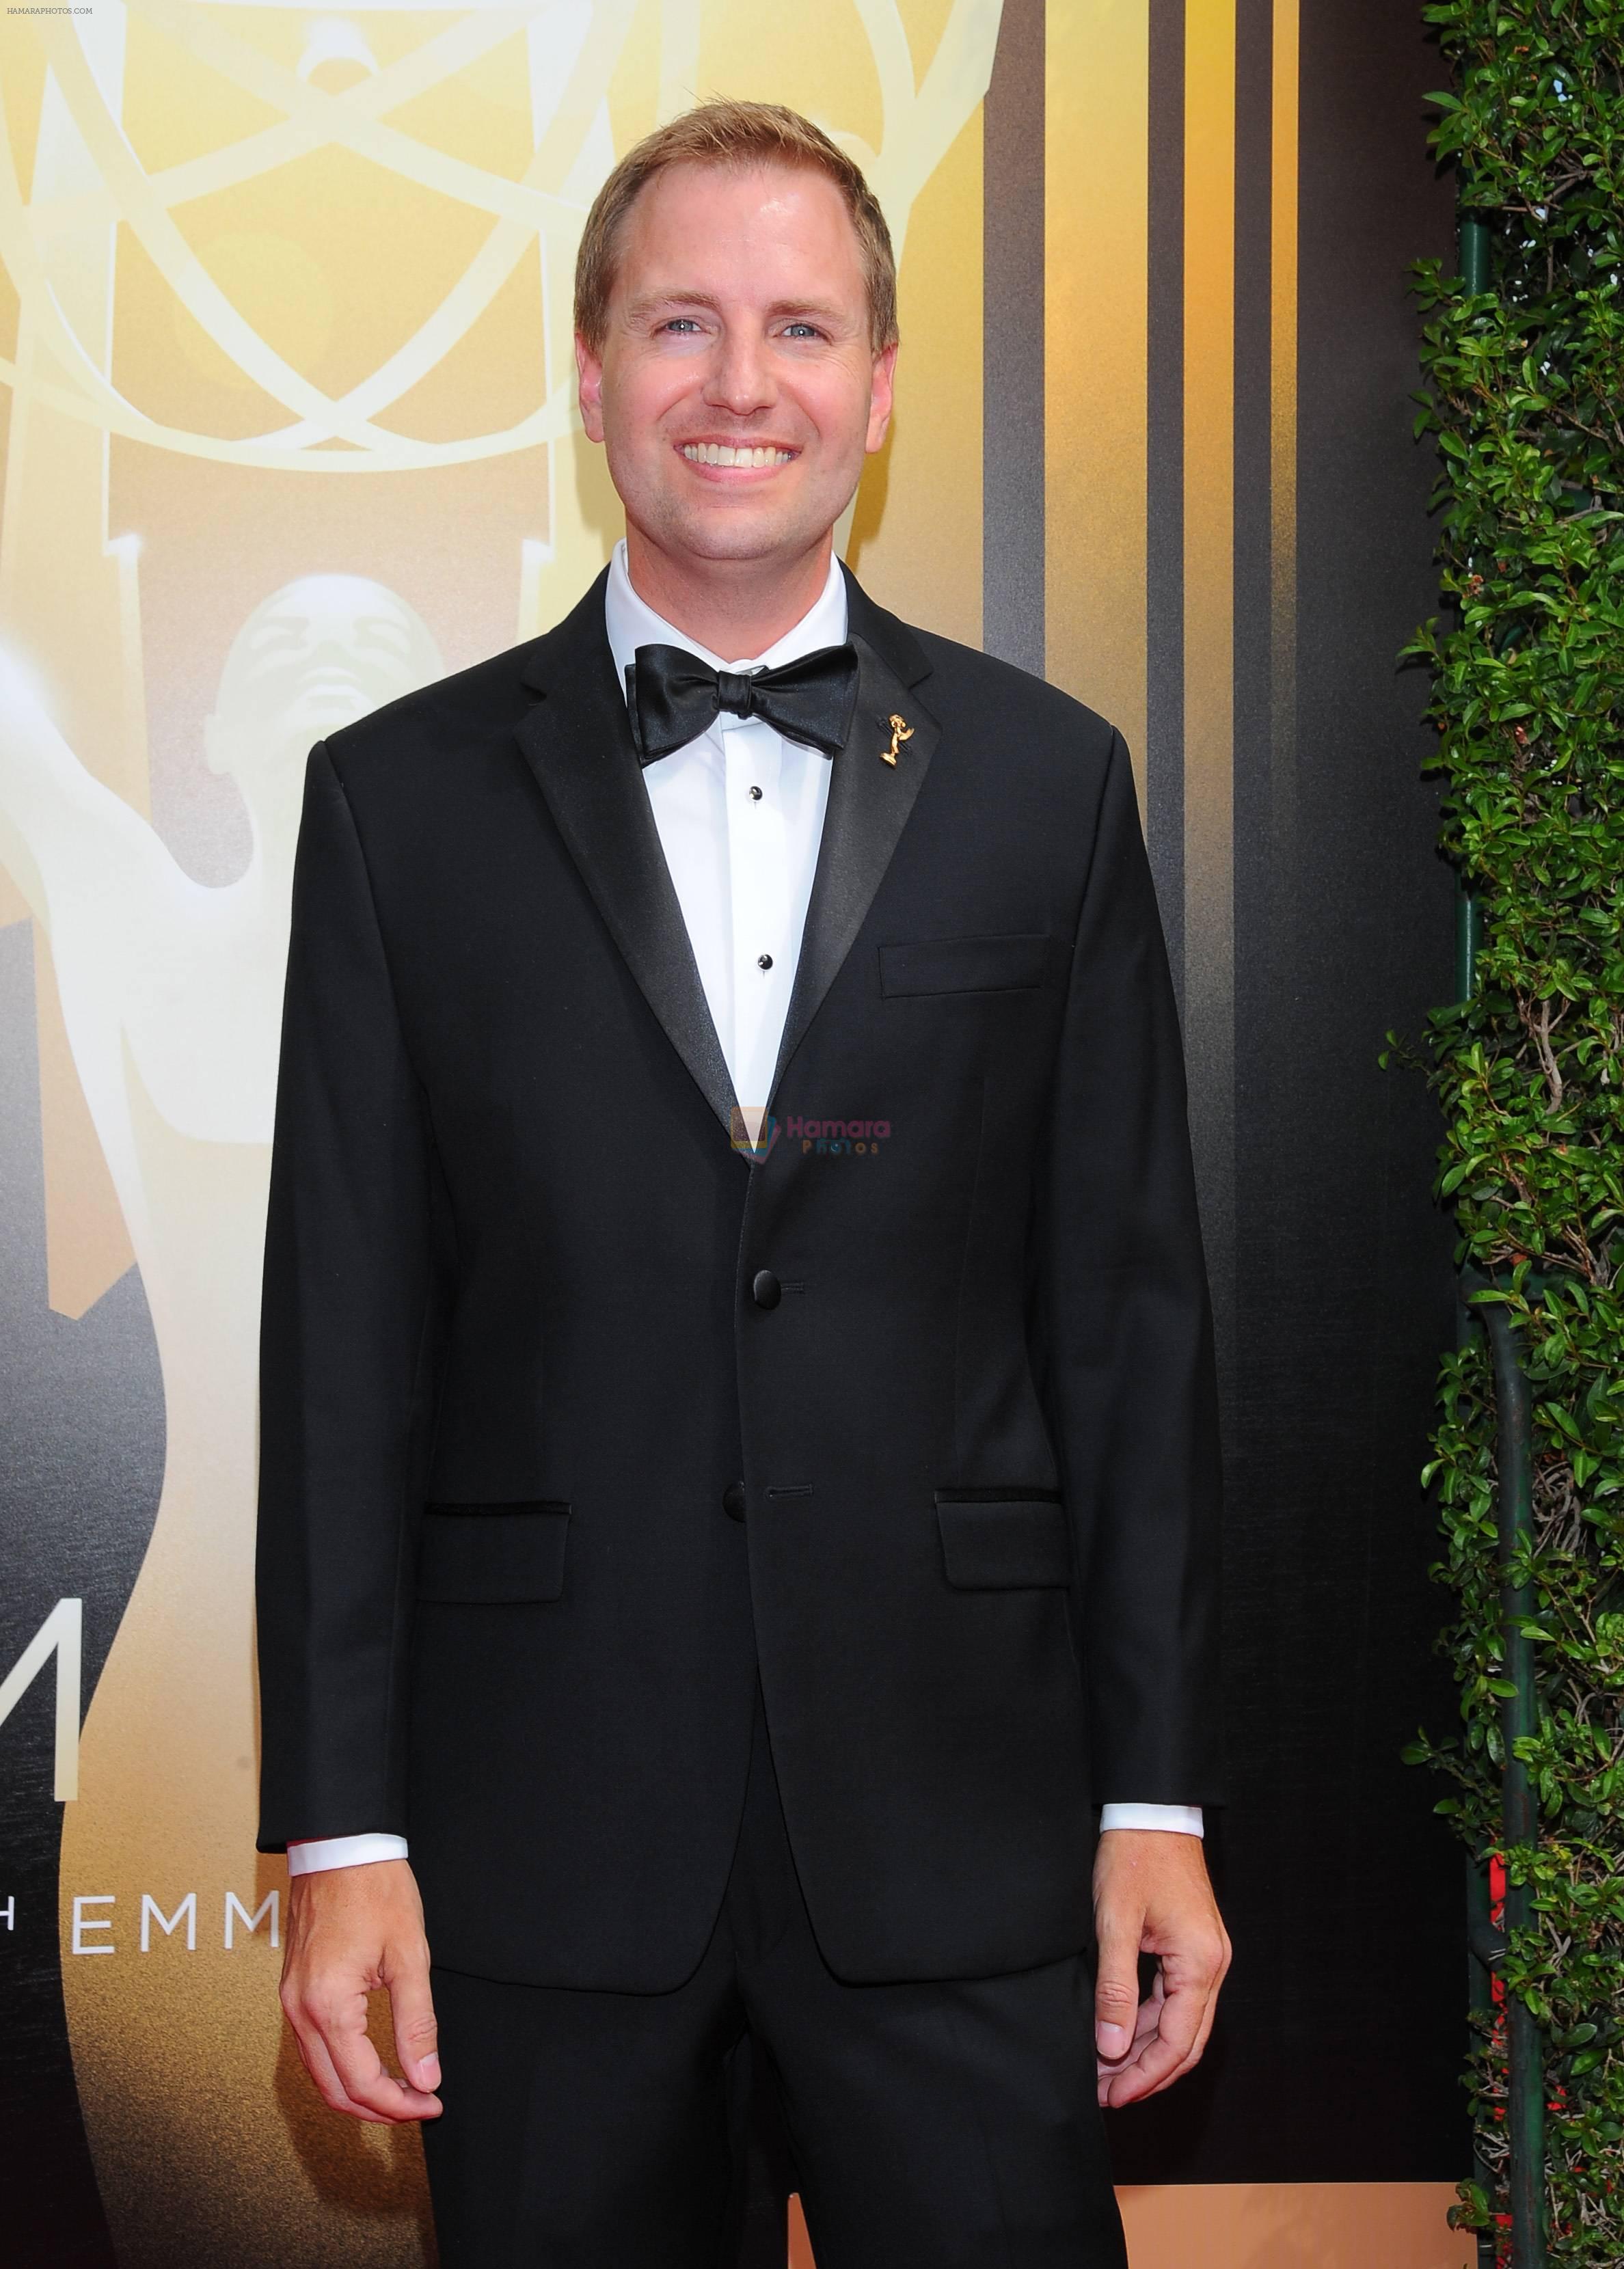 Emmy Awards 2015 red carpet